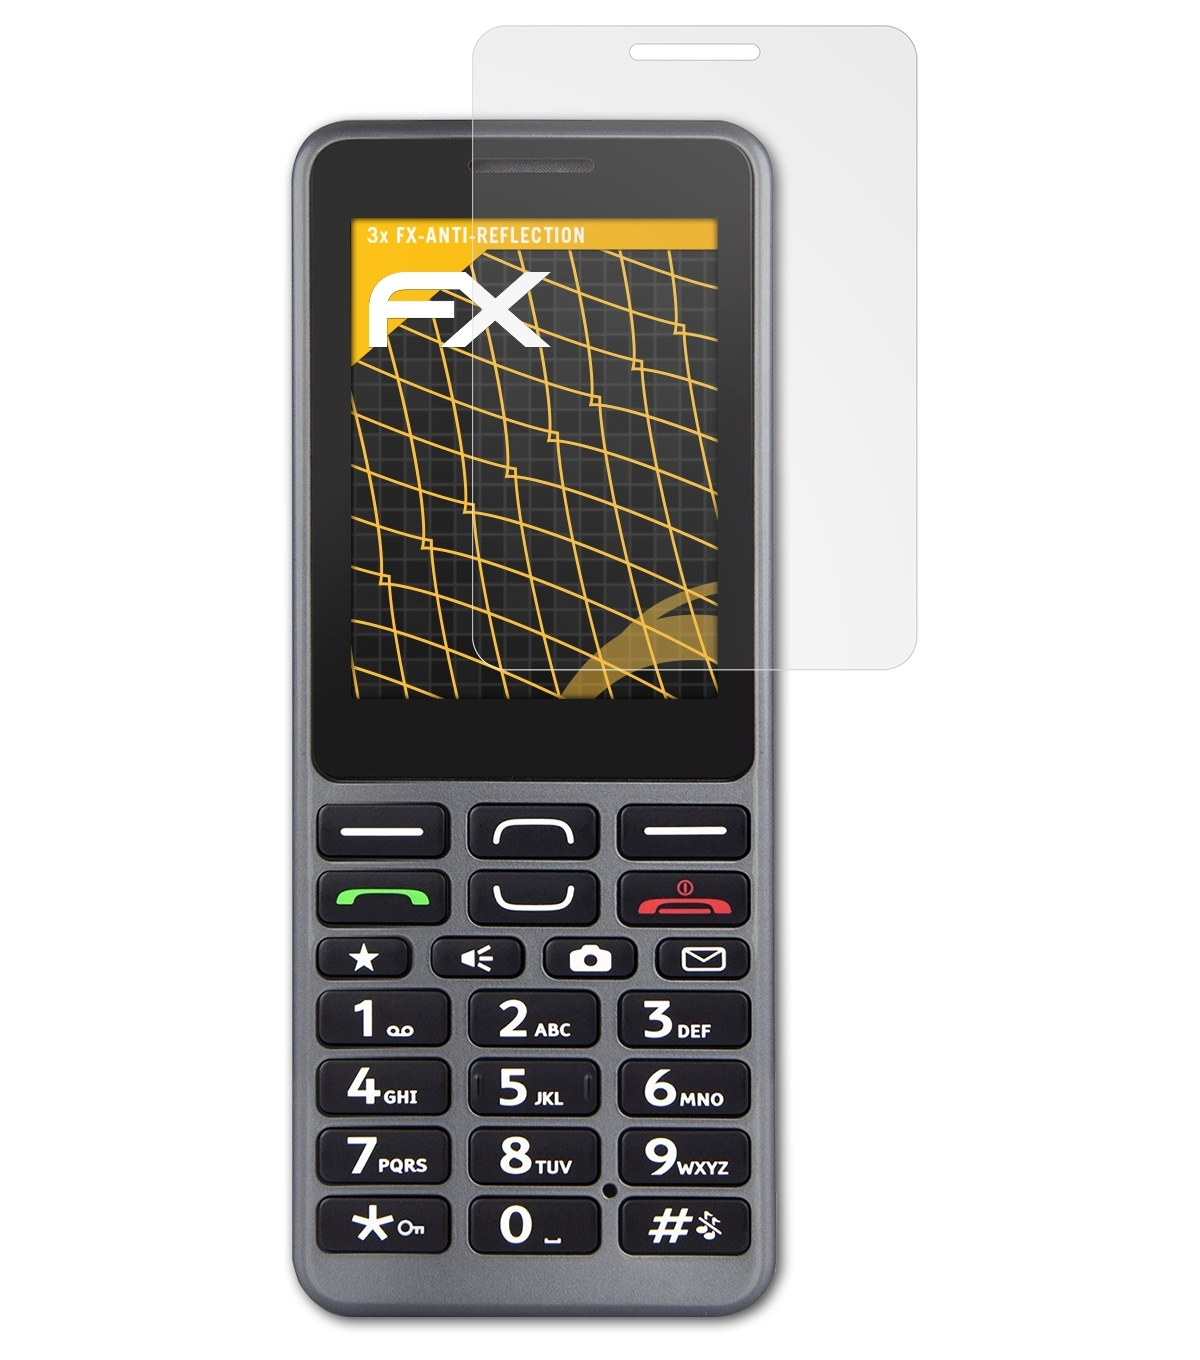 ATFOLIX 3x FX-Antireflex Displayschutz(für 509) Doro PhoneEasy